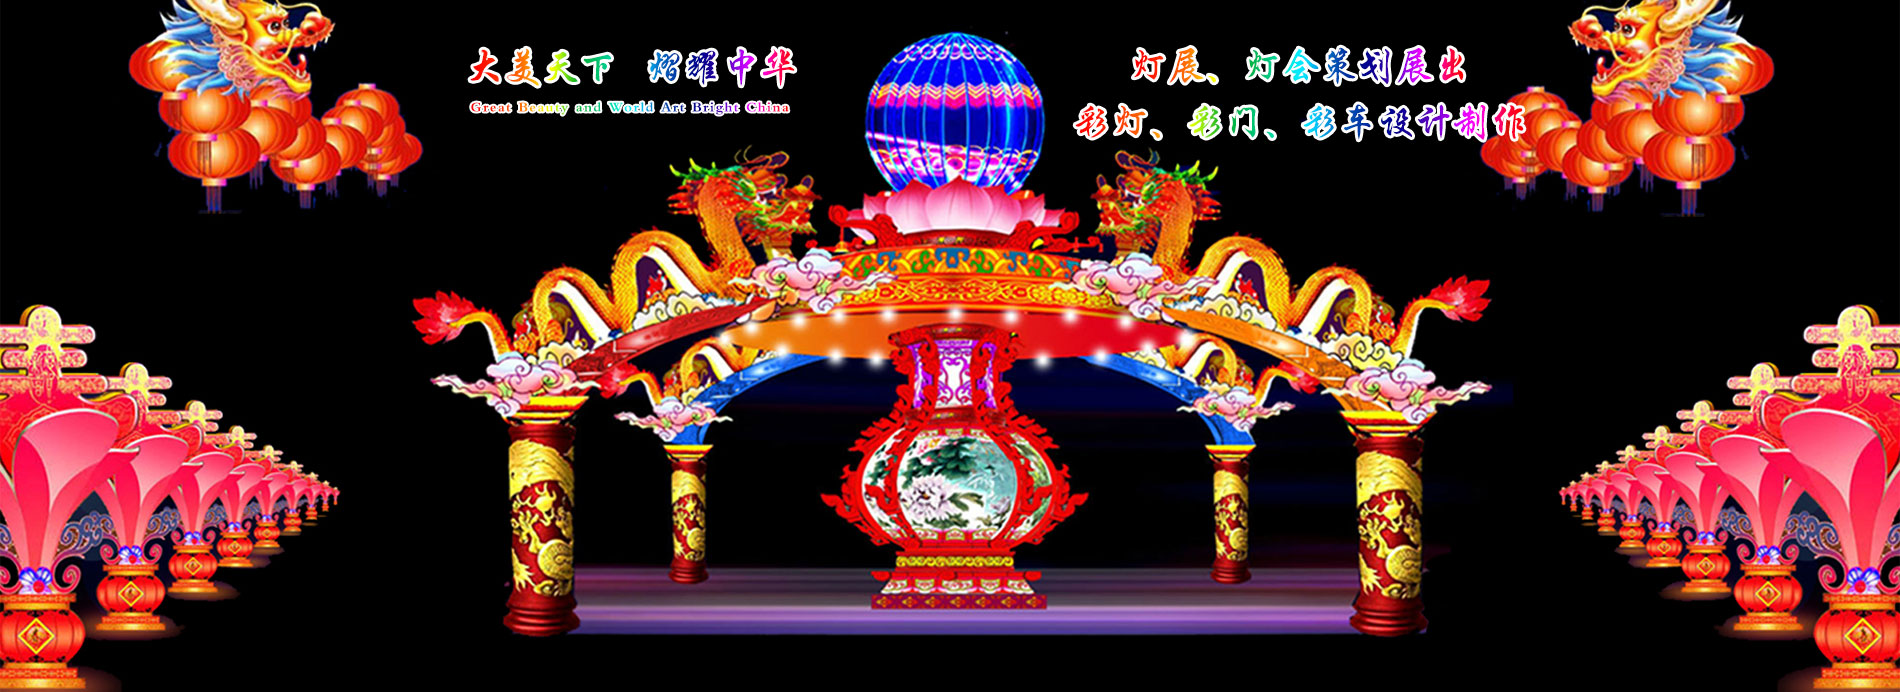 大熠華彩燈,河南彩燈制作,洛陽(yáng)彩燈廠(chǎng)家,河南燈會(huì )燈展彩車(chē)設計